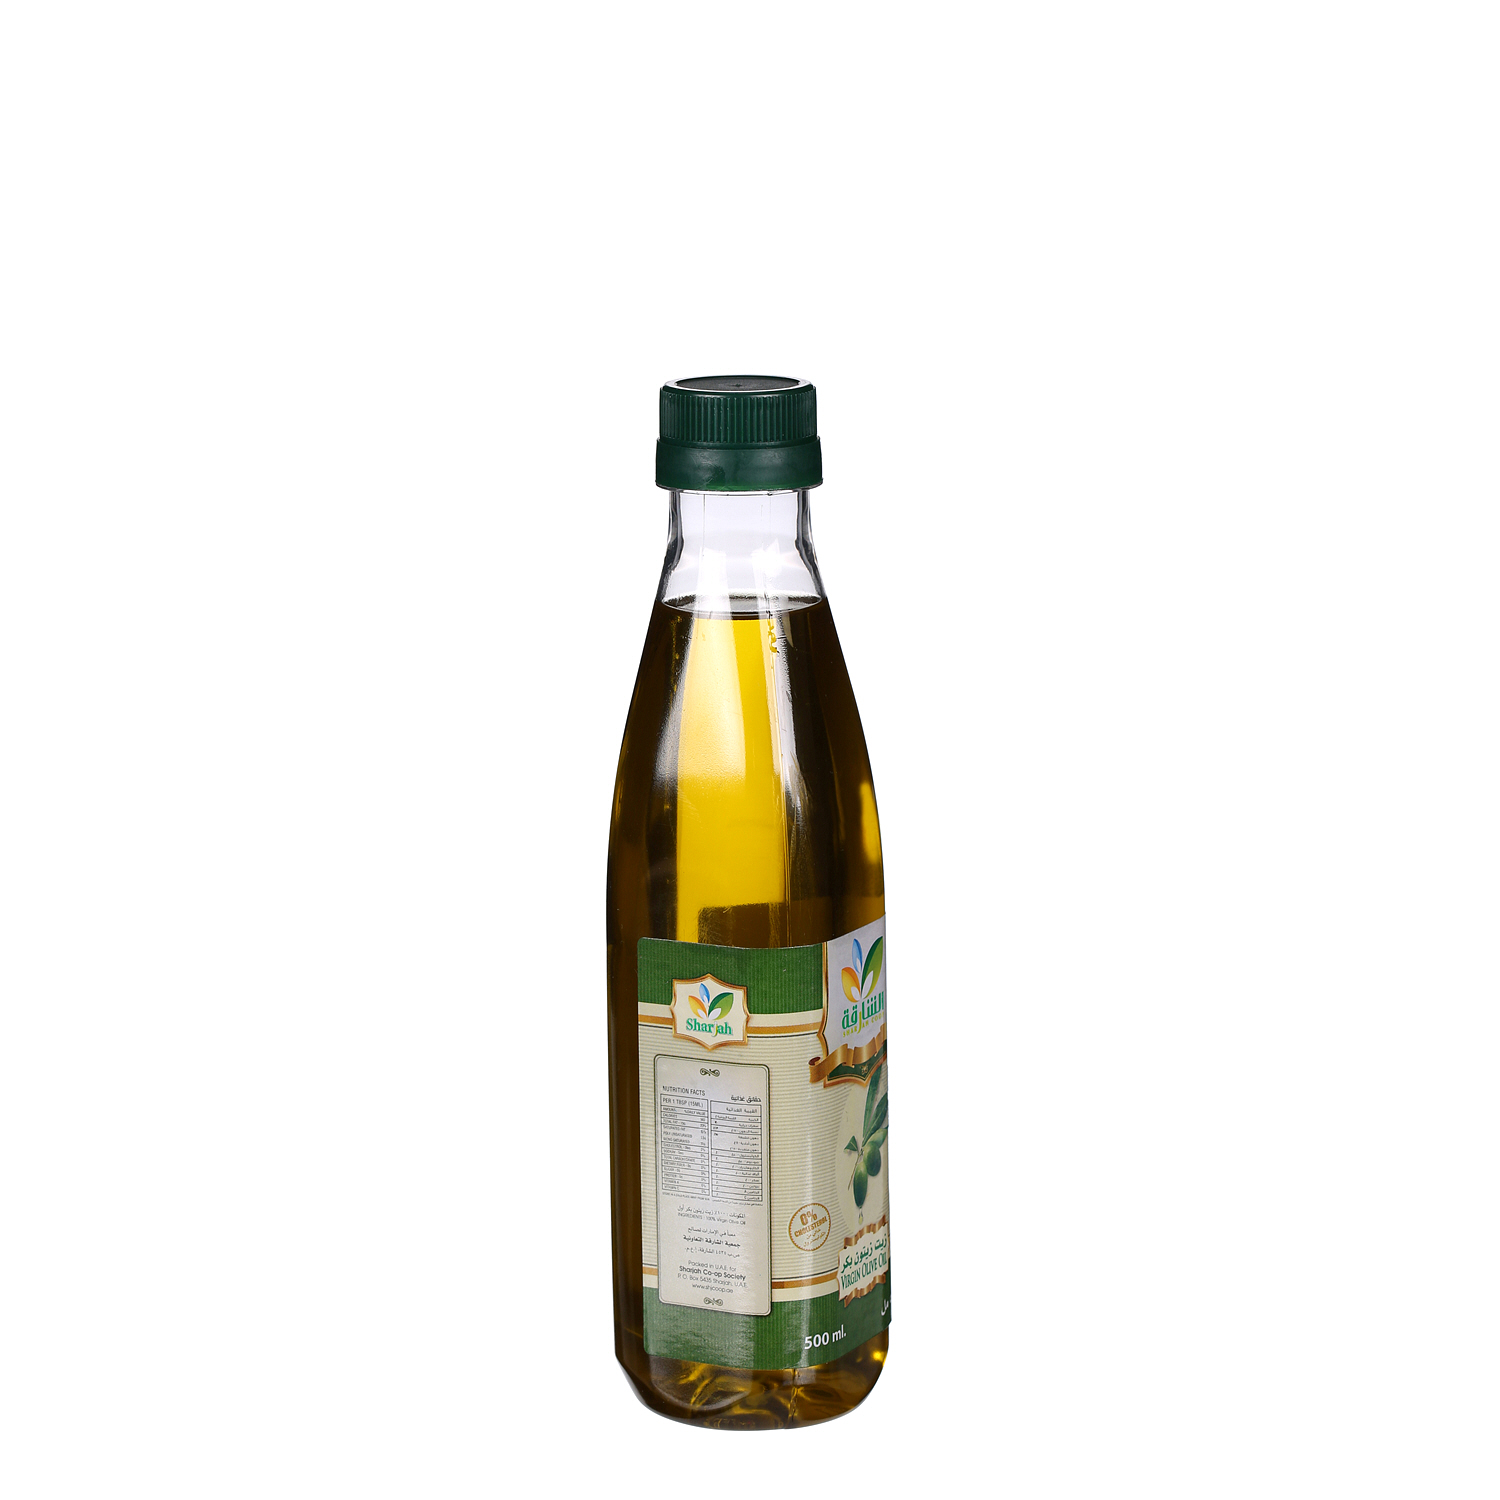 Sharjah Coop Virgin Olive Oil 500 ml